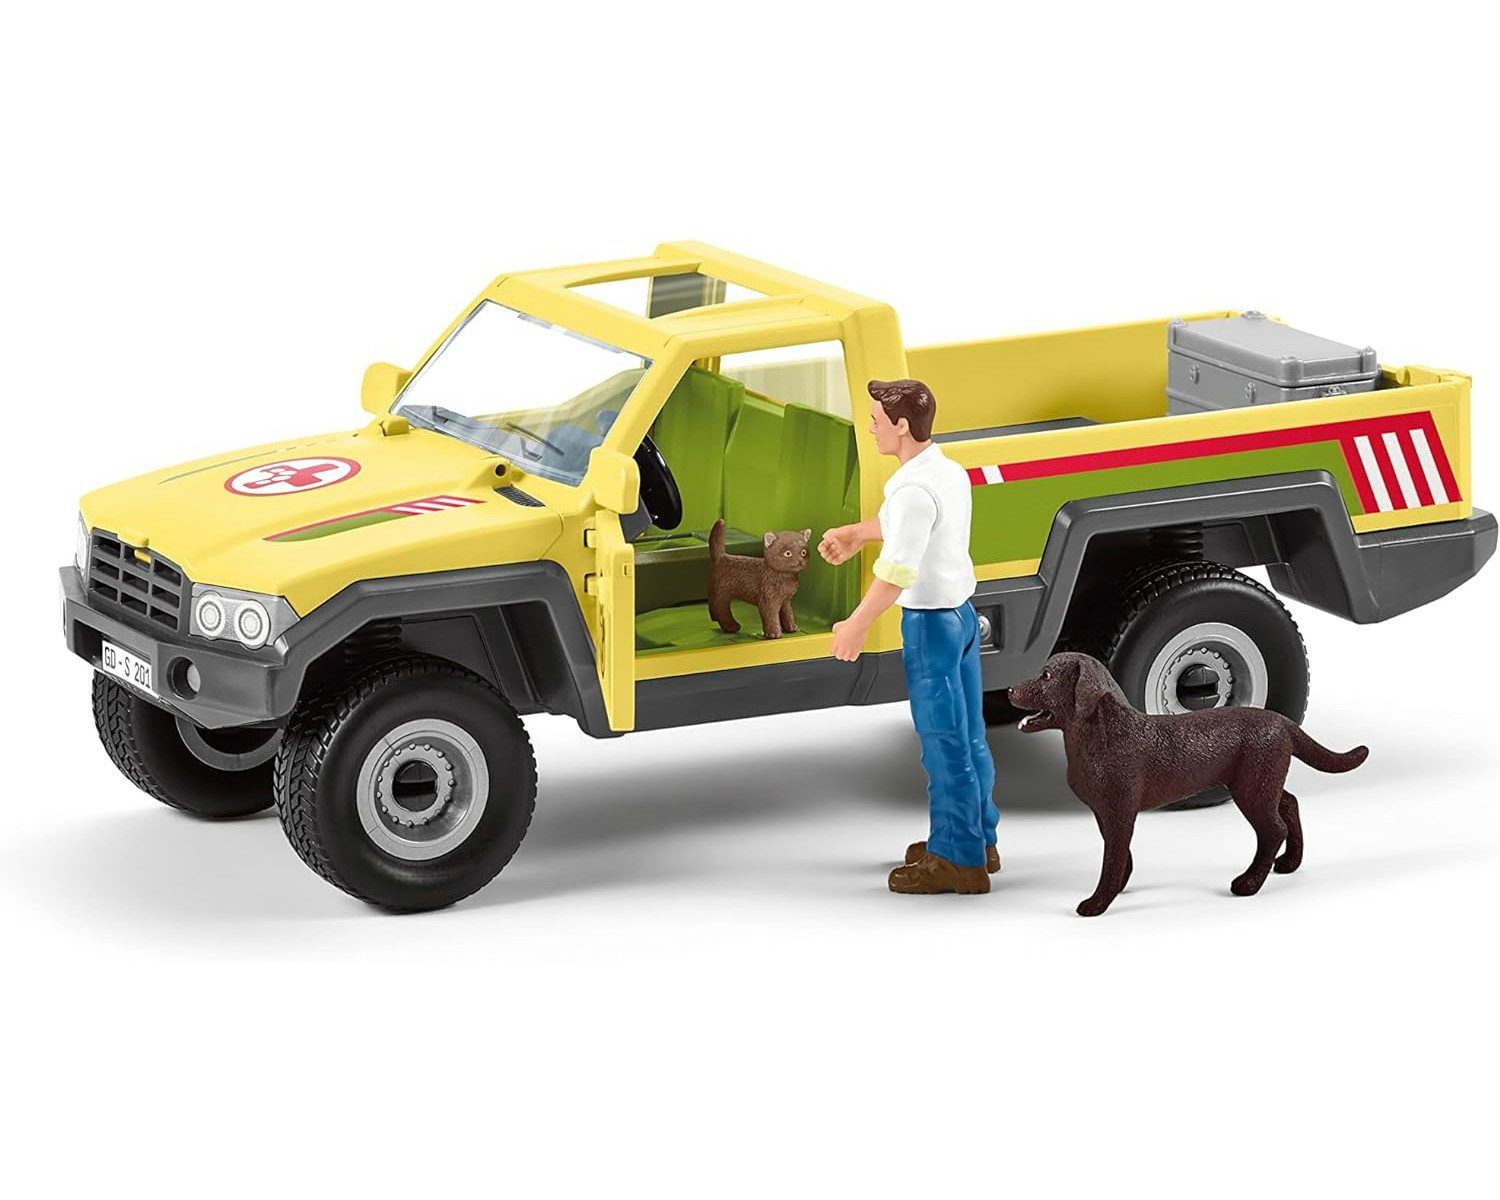 Schleich® Spielfigur Tierfiguren Farm World - auf dem Bauernhof Tierarztbesuch